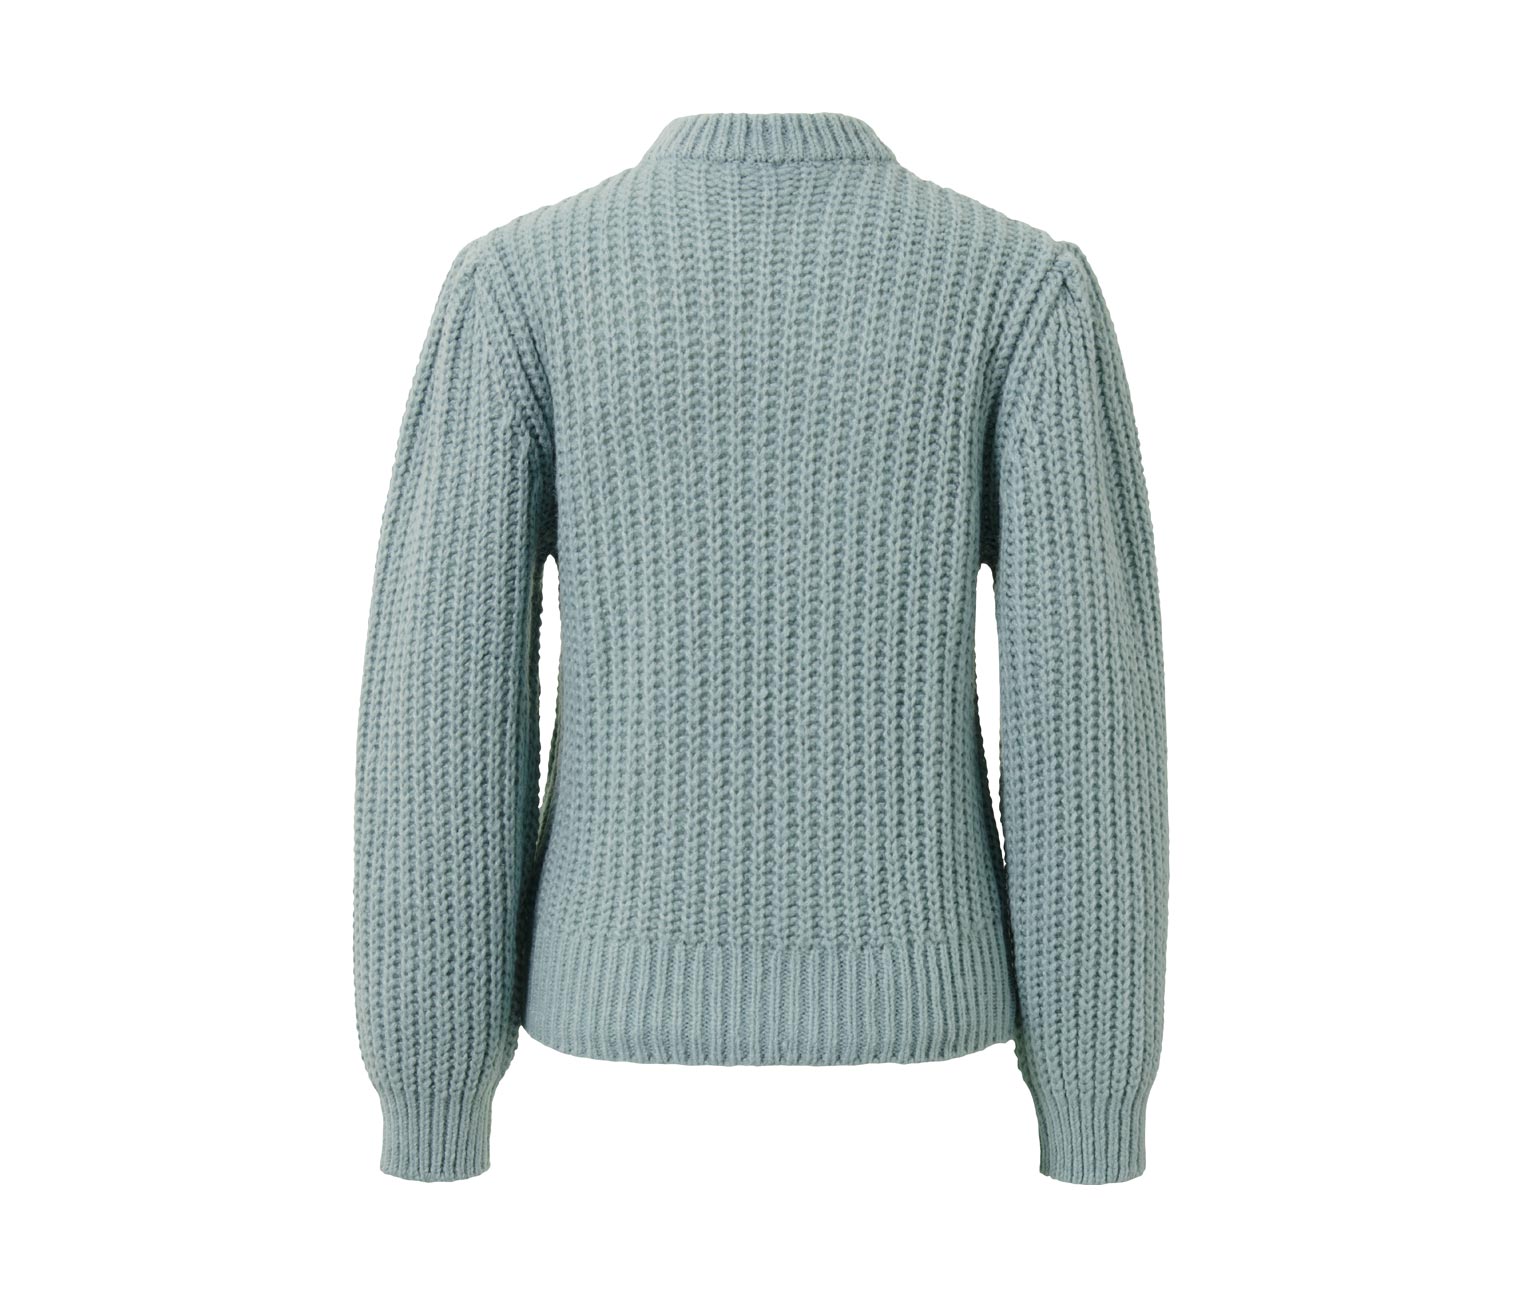 Grobstrick-Pullover mit Wolle, rauchblau online bestellen bei Tchibo 646776